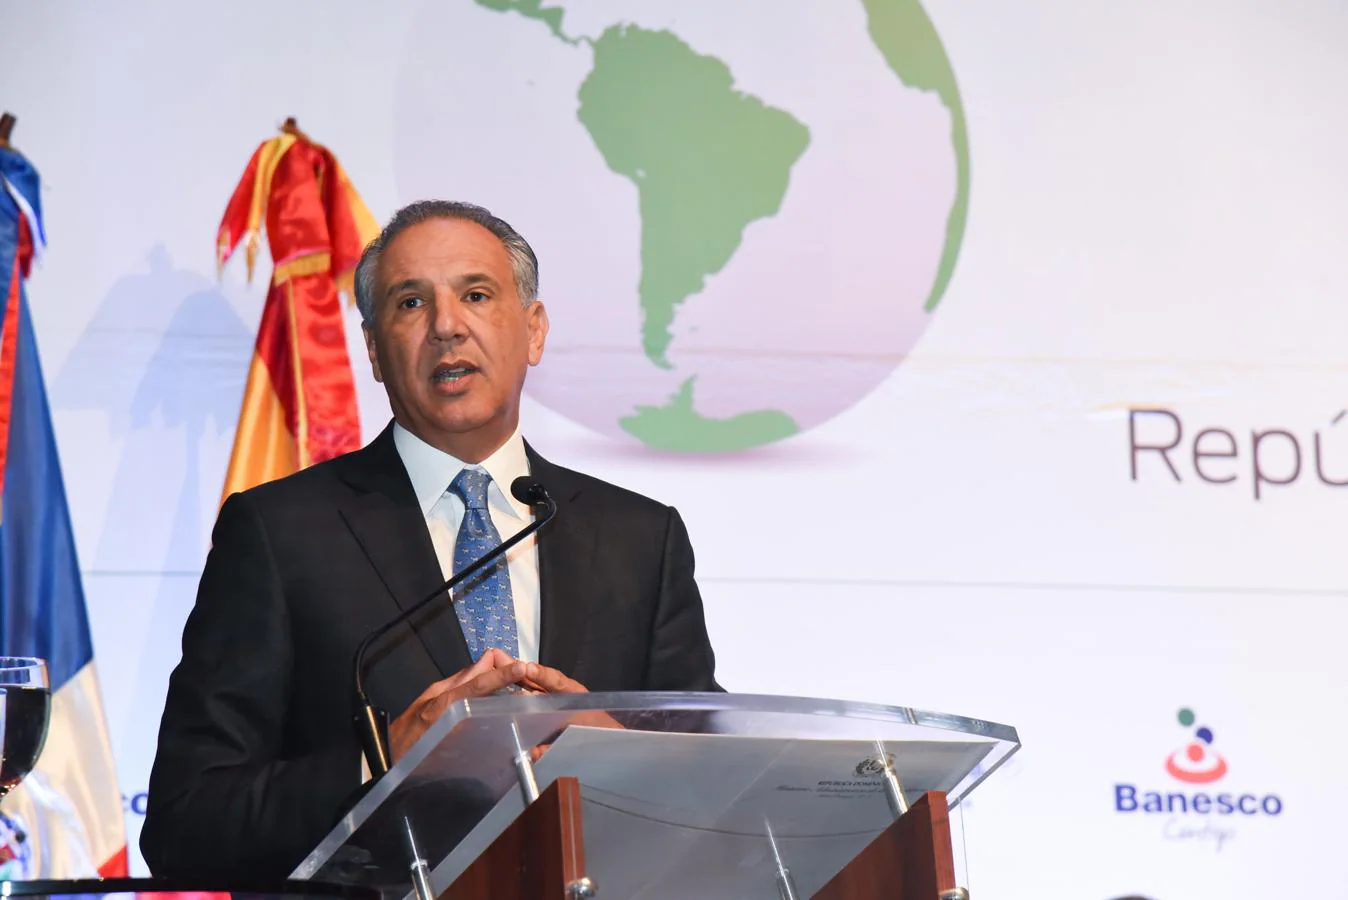 Foros ABC América. José Ramón Peralta, ministro administrativo de la Presidencia de la República Dominicana, interviene en una de las mesas redondas de la visita de los Foros ABC América a este país.